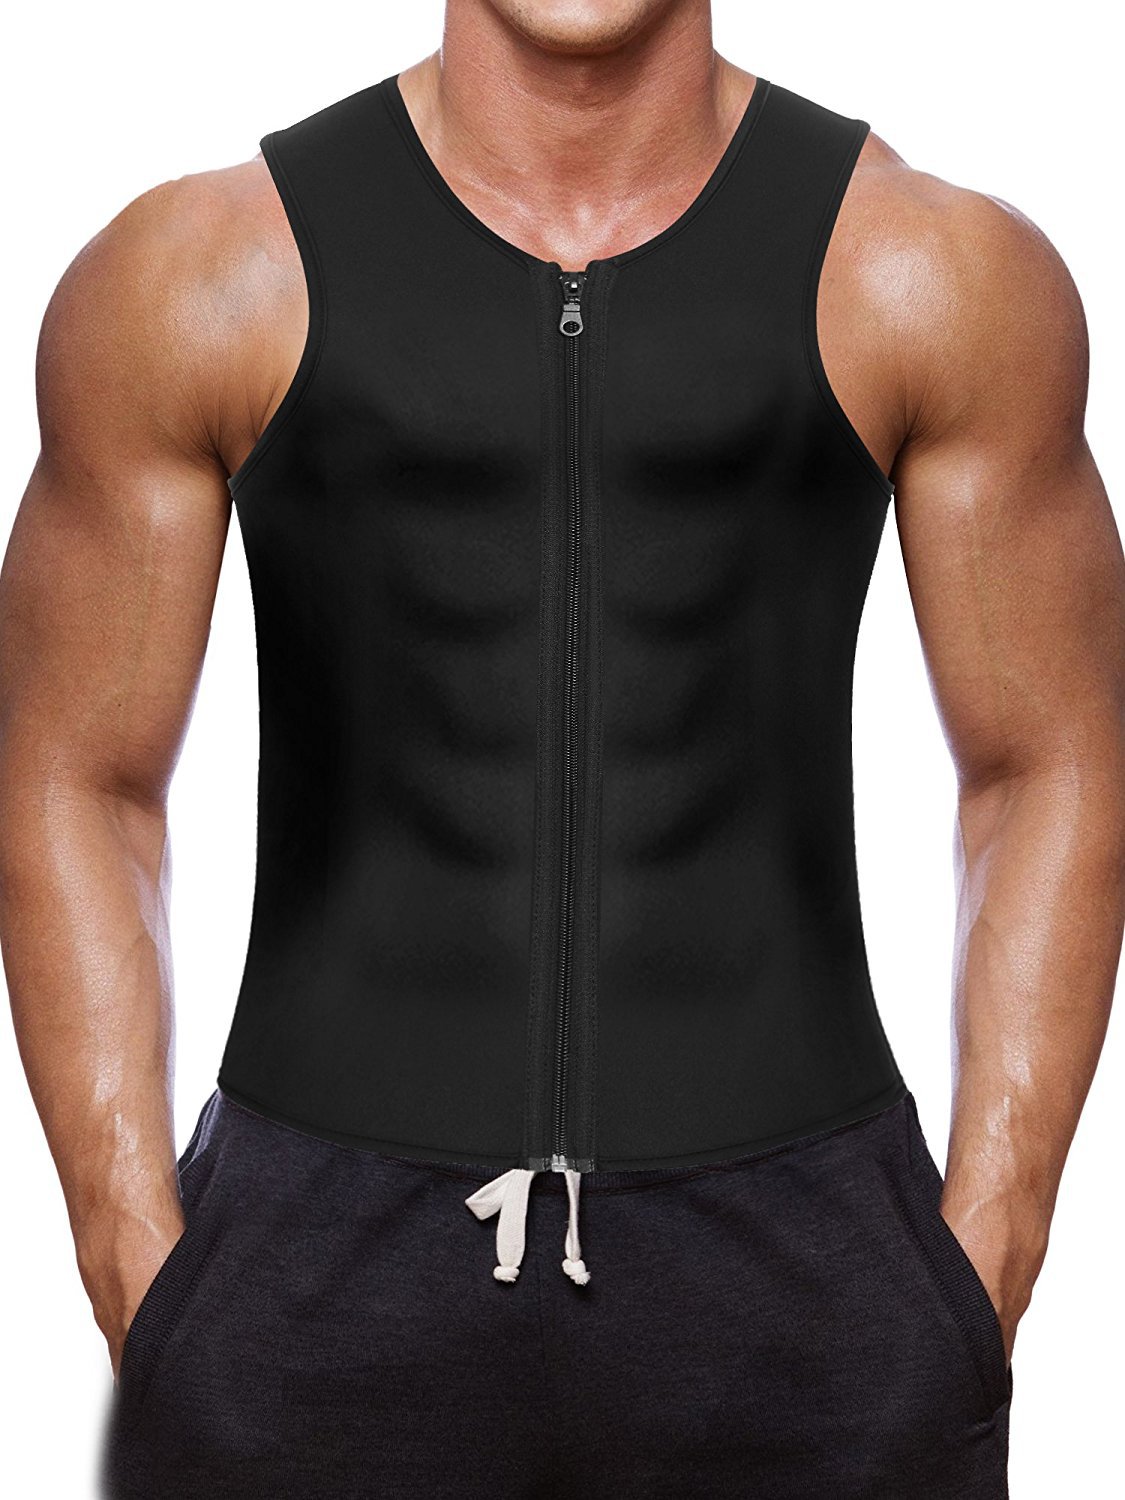 

BNC Men Waist Trainer Vest for Weightloss Hot Neoprene Corset Body Shaper Zipper Sauna Tank Top Workout Shirt